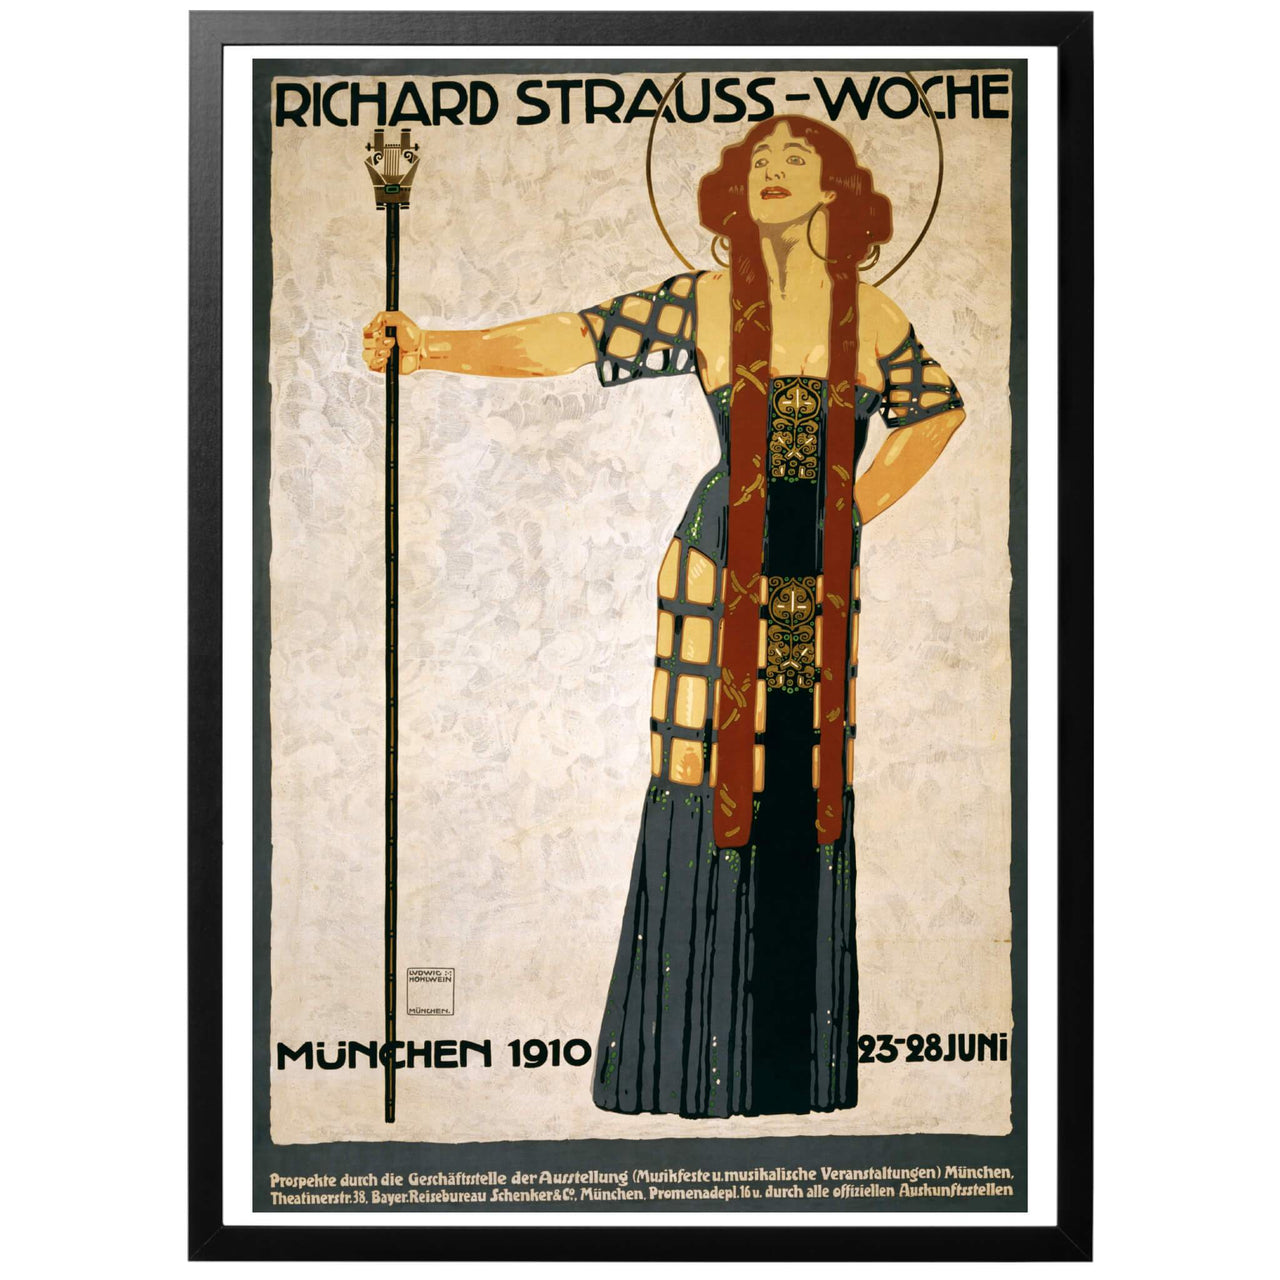 Richard Strauss Woche Poster